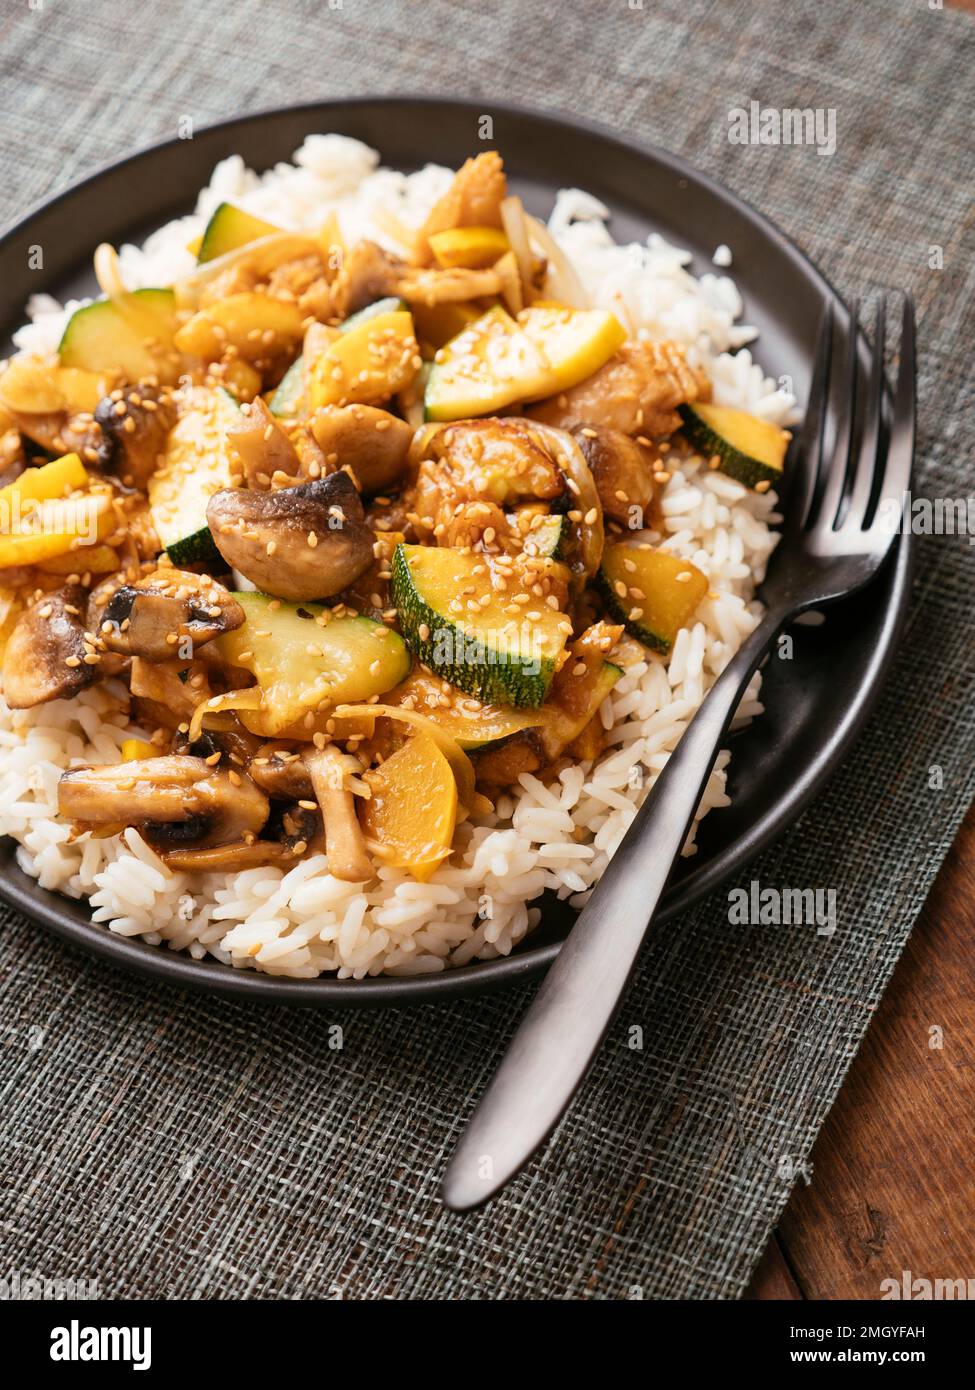 Zucchini, Mushrooms and  Vegan Chickun on rice. Stock Photo